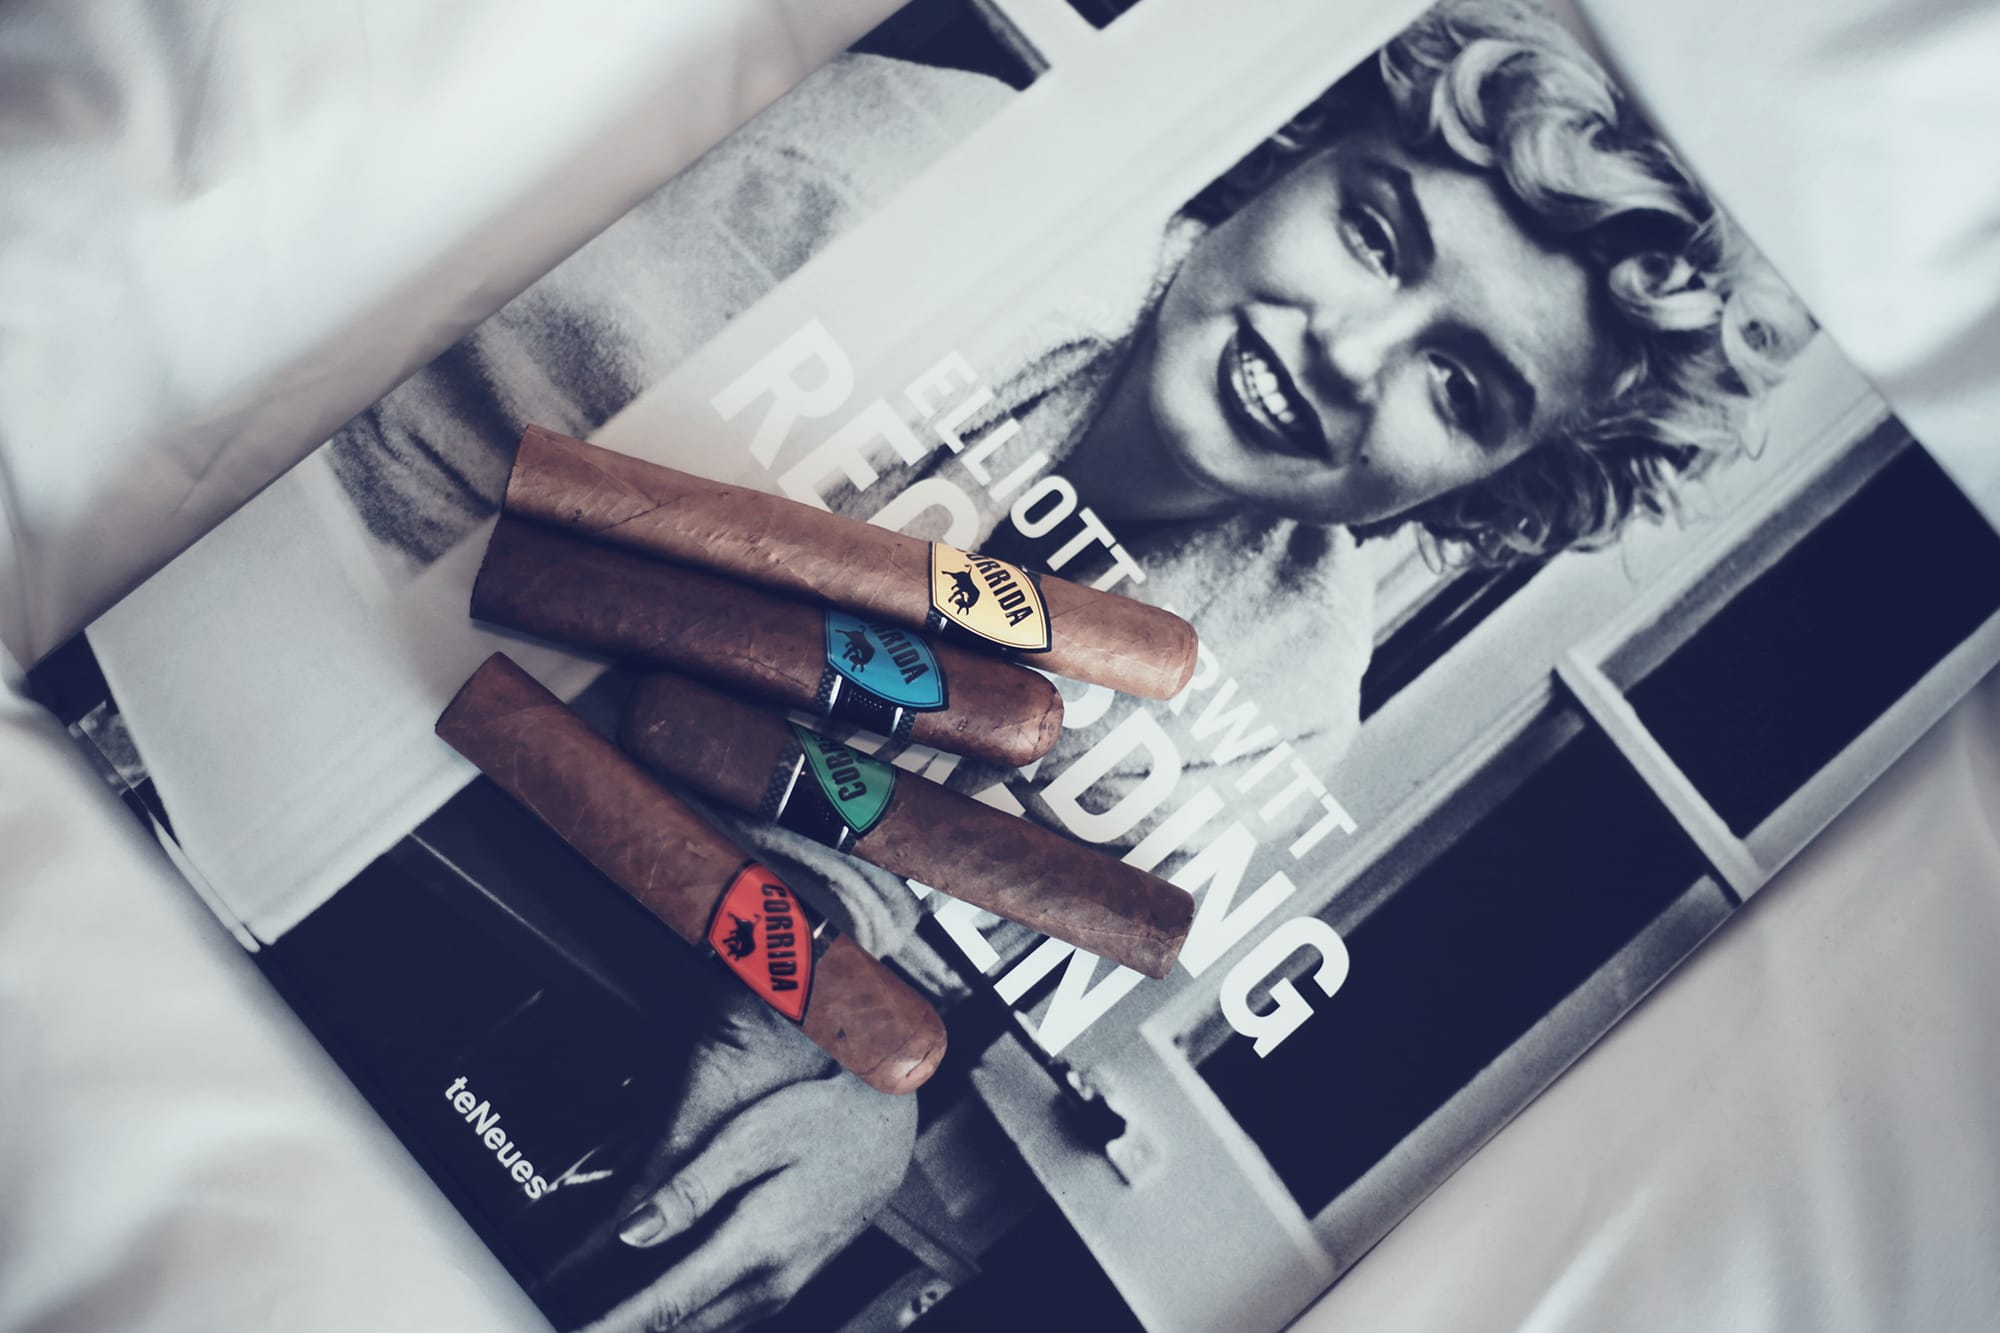 Vier Zigarren von dem Label Gorrida liegen auf einem Magazin von teNeues